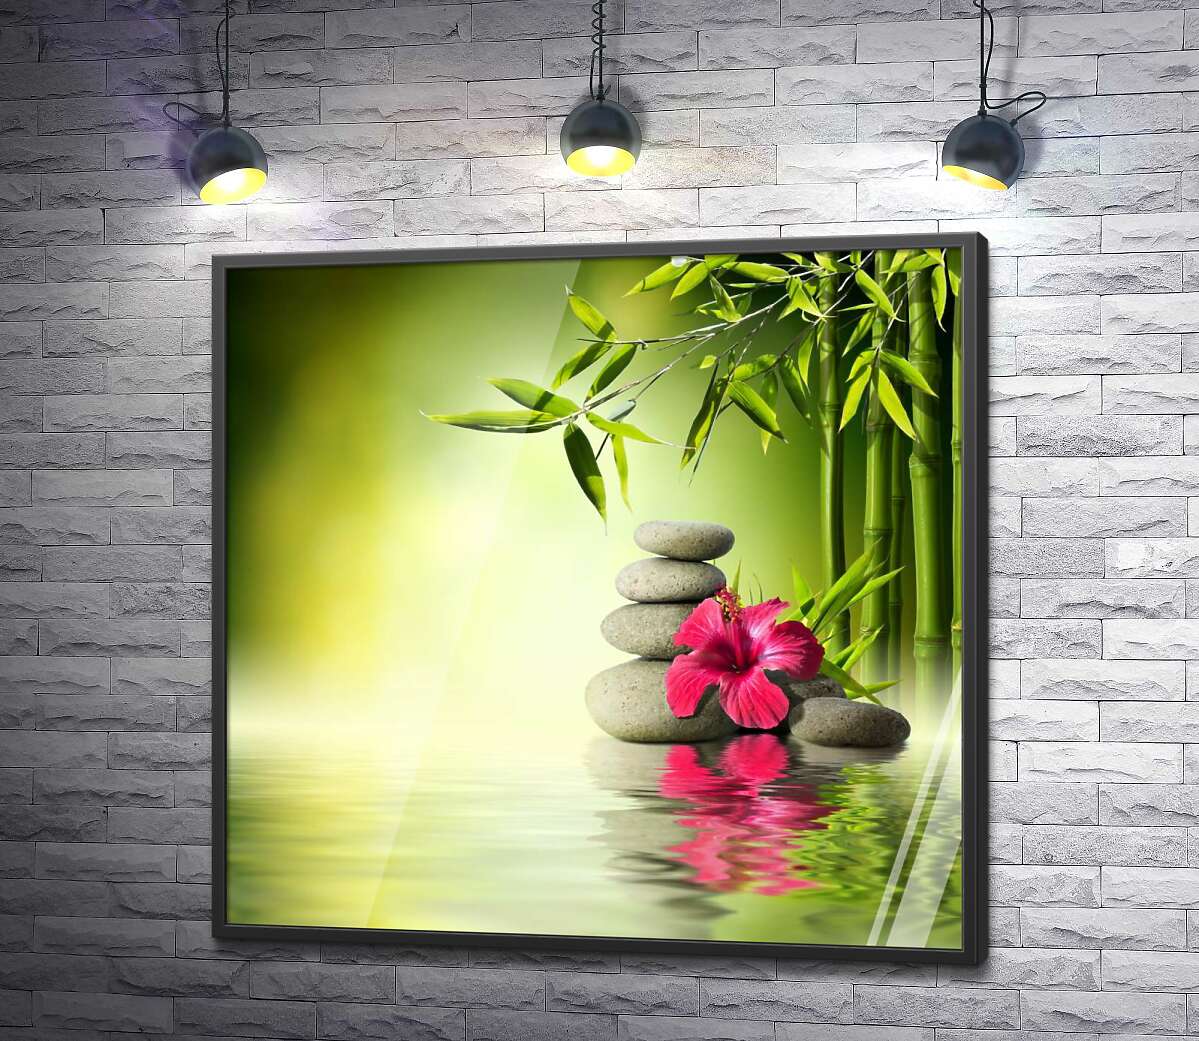 постер Малиновый цветок гибискуса и стройный бамбук среди серых камней на зеленой поверхности воды